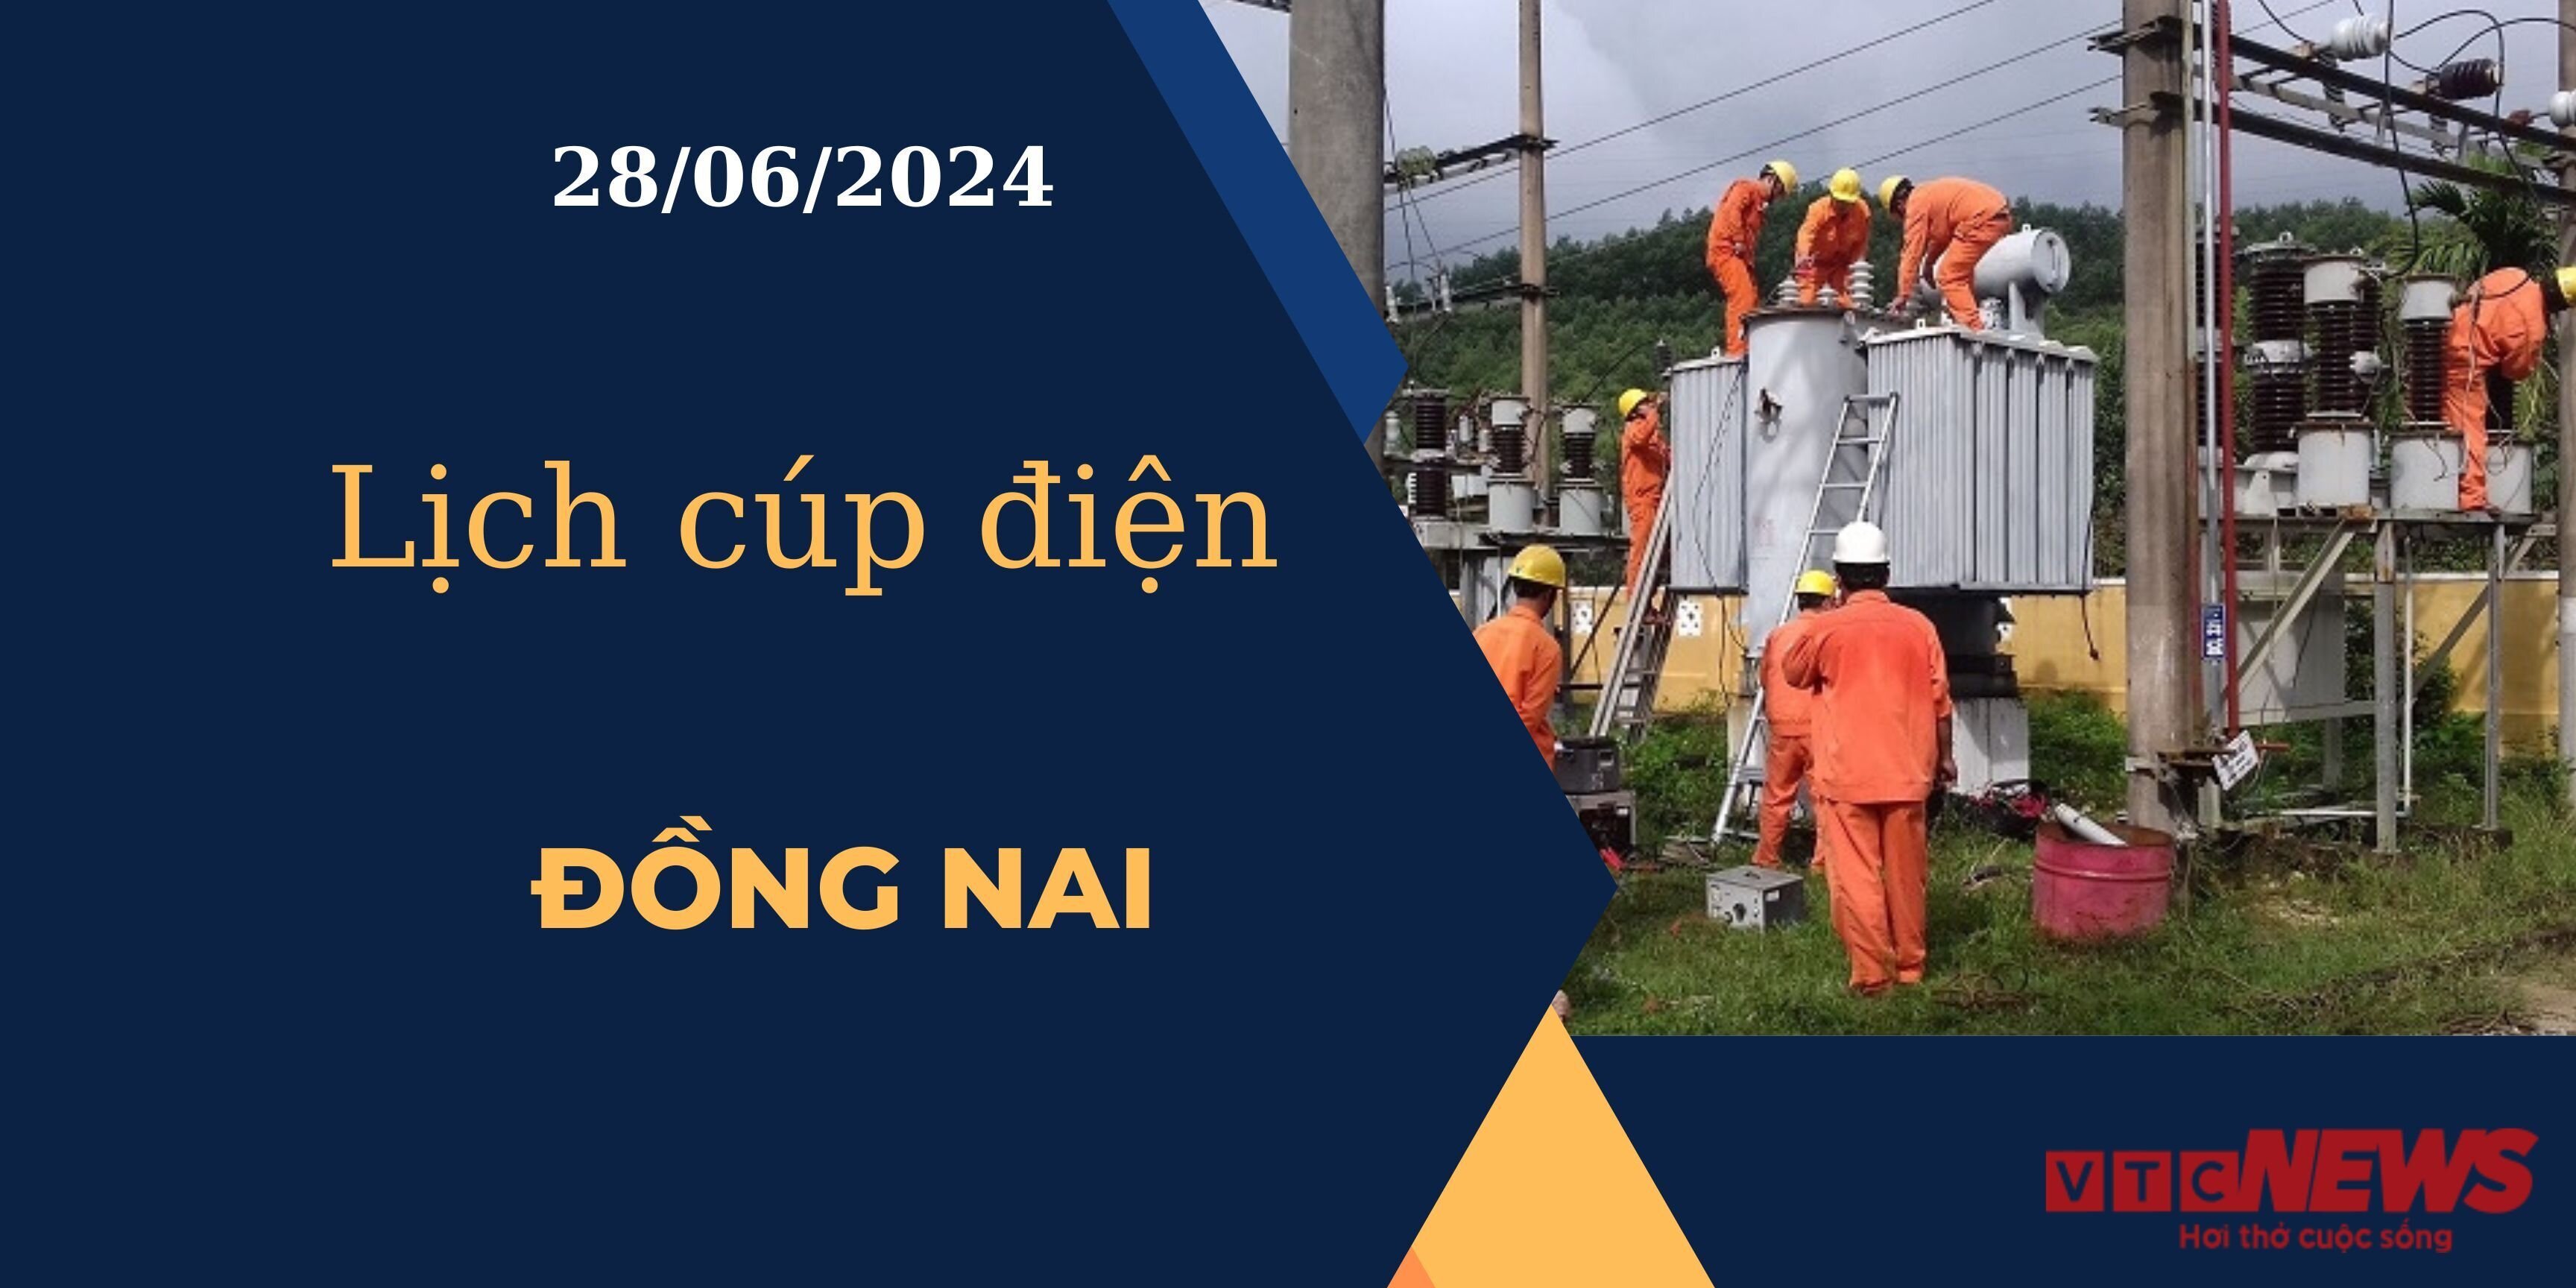 Lịch cúp điện hôm nay ngày 28/06/2024 tại Đồng Nai